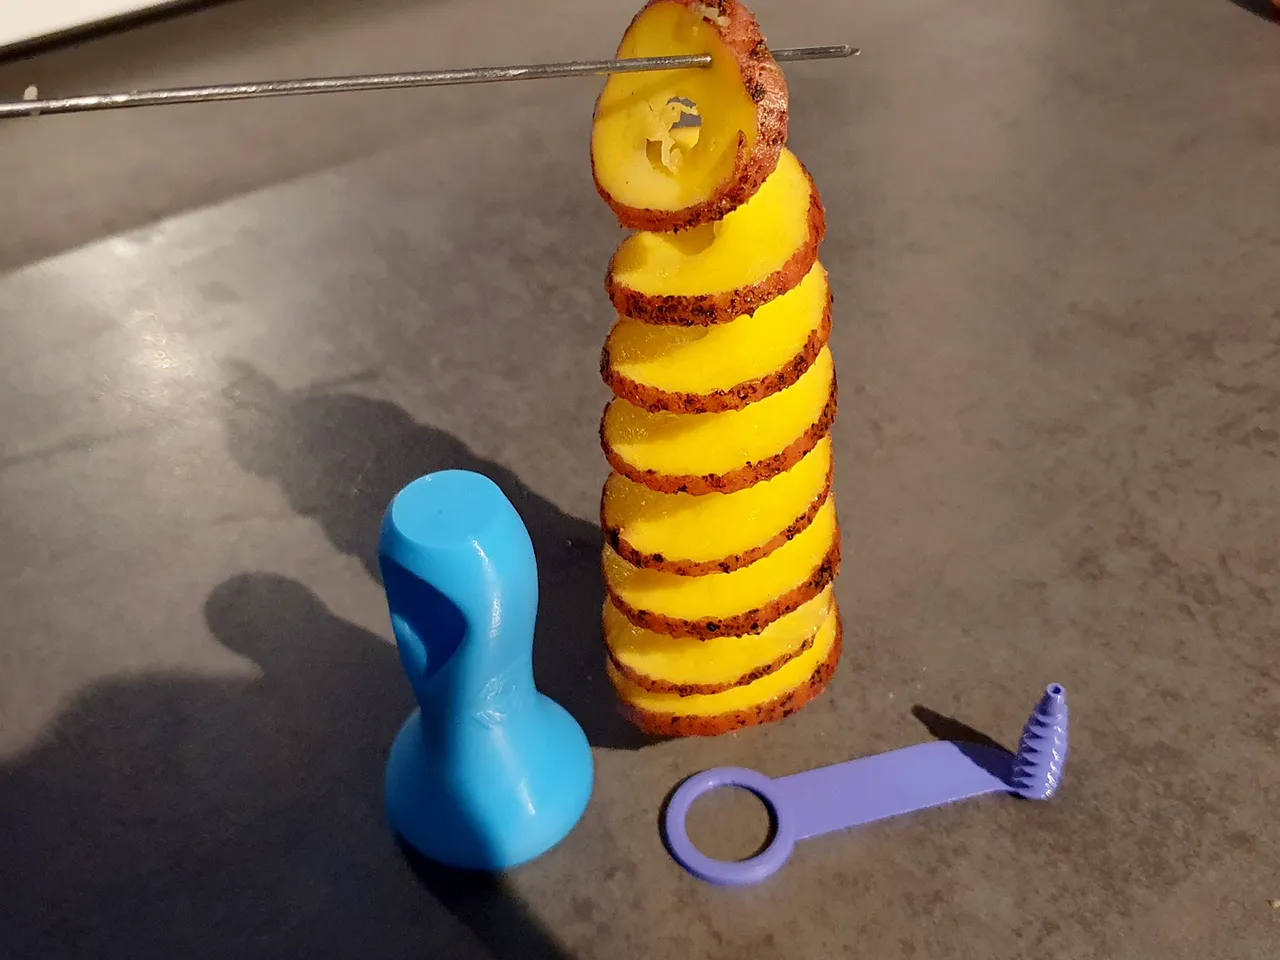 How To Make Spiral Potato Cutter, Homemade Spiral Potato Cutter